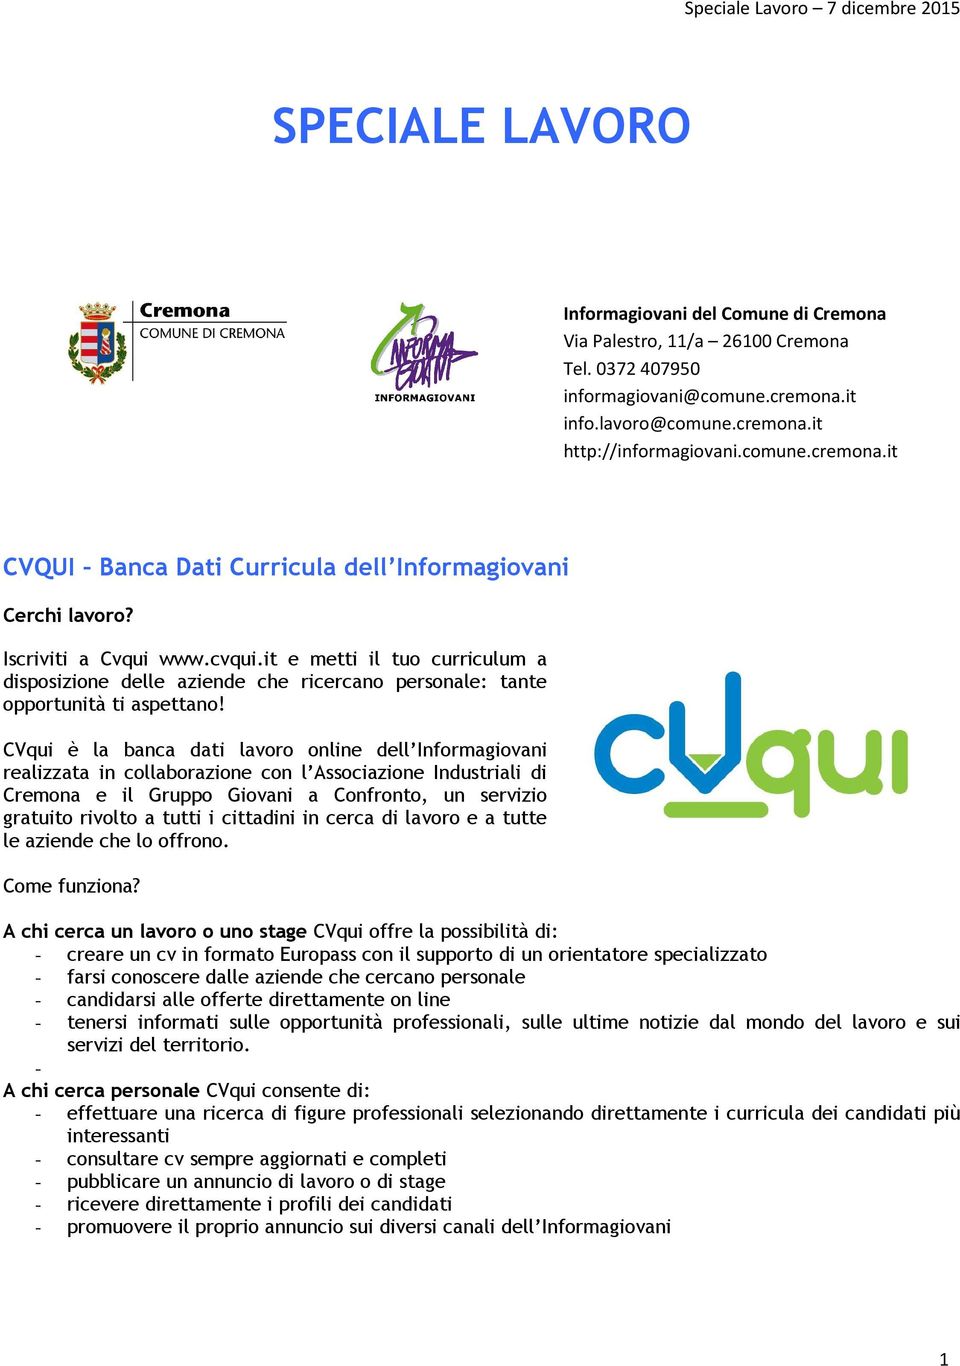 CVqui è la banca dati lavoro online dell Informagiovani realizzata in collaborazione con l Associazione Industriali di Cremona e il Gruppo Giovani a Confronto, un servizio gratuito rivolto a tutti i